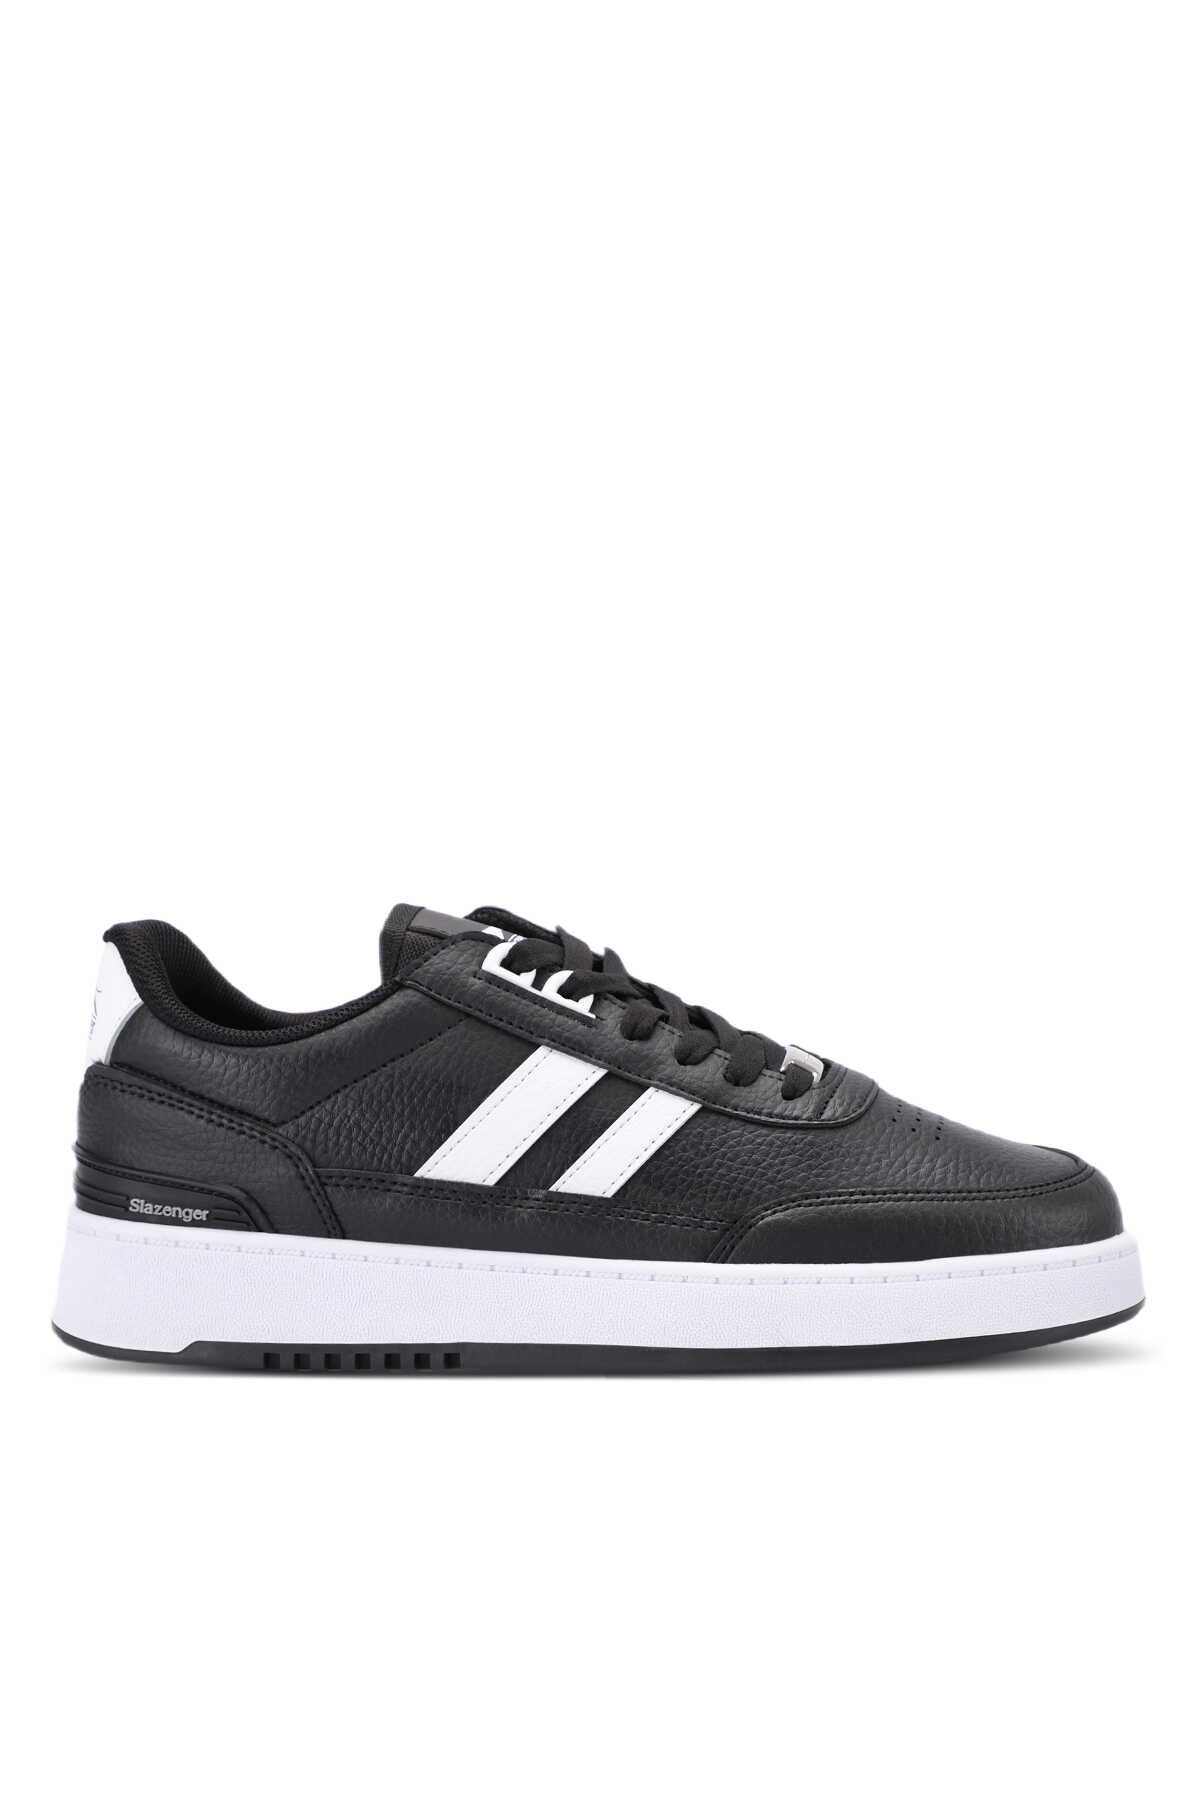 Slazenger - Slazenger DAPHNE Sneaker Erkek Ayakkabı Siyah / Beyaz